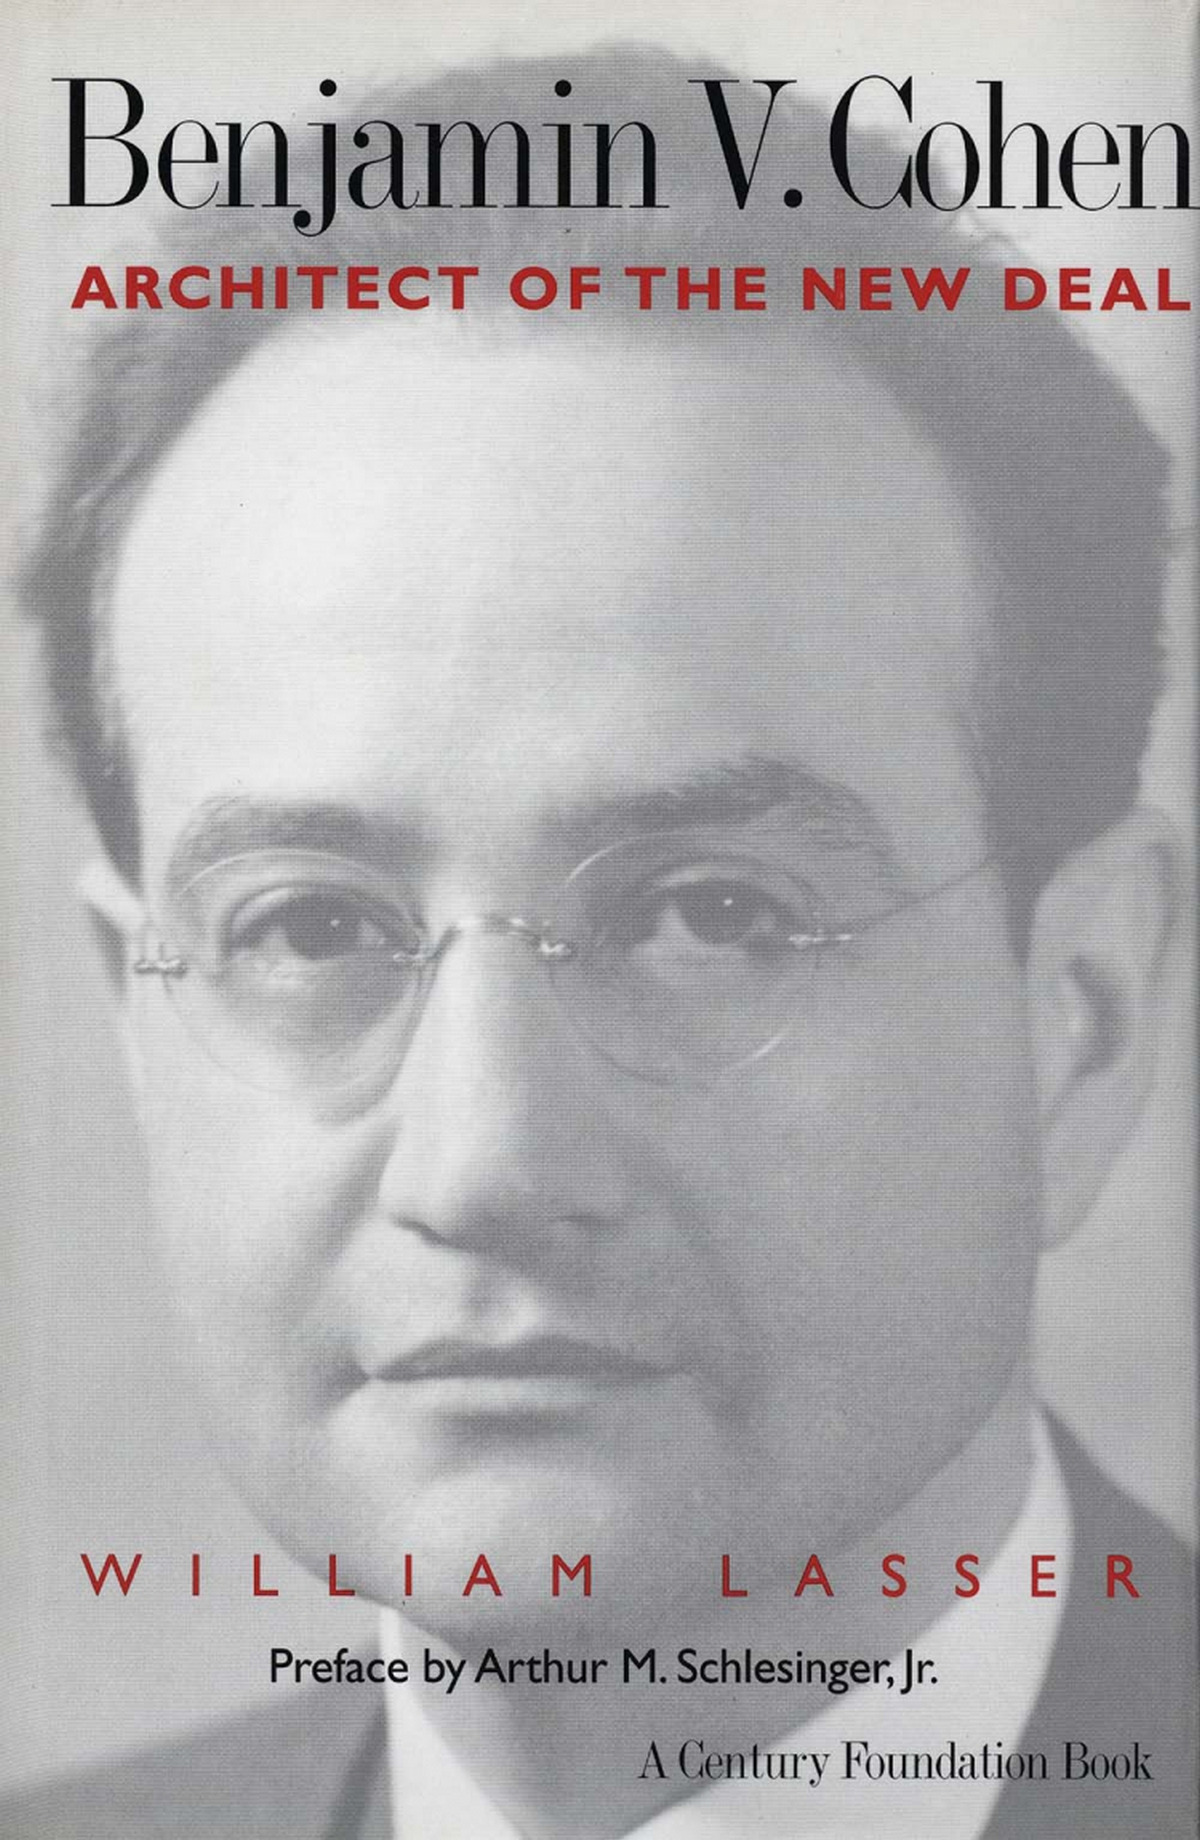 Benjamin V. Cohen